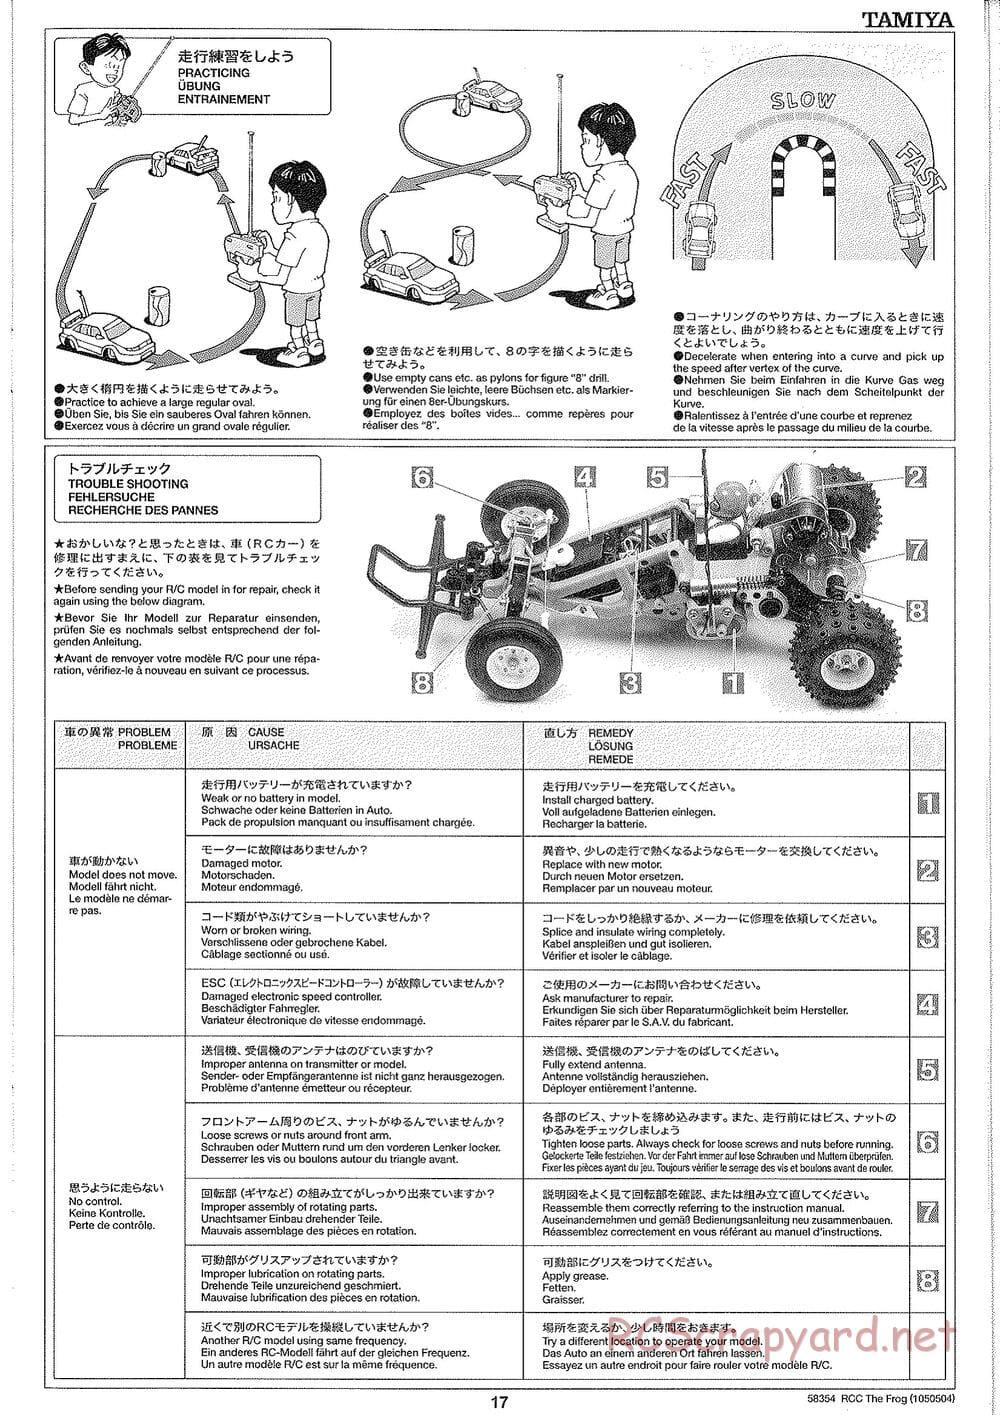 Tamiya - The Frog - 2005 - ORV Chassis - Manual - Page 17